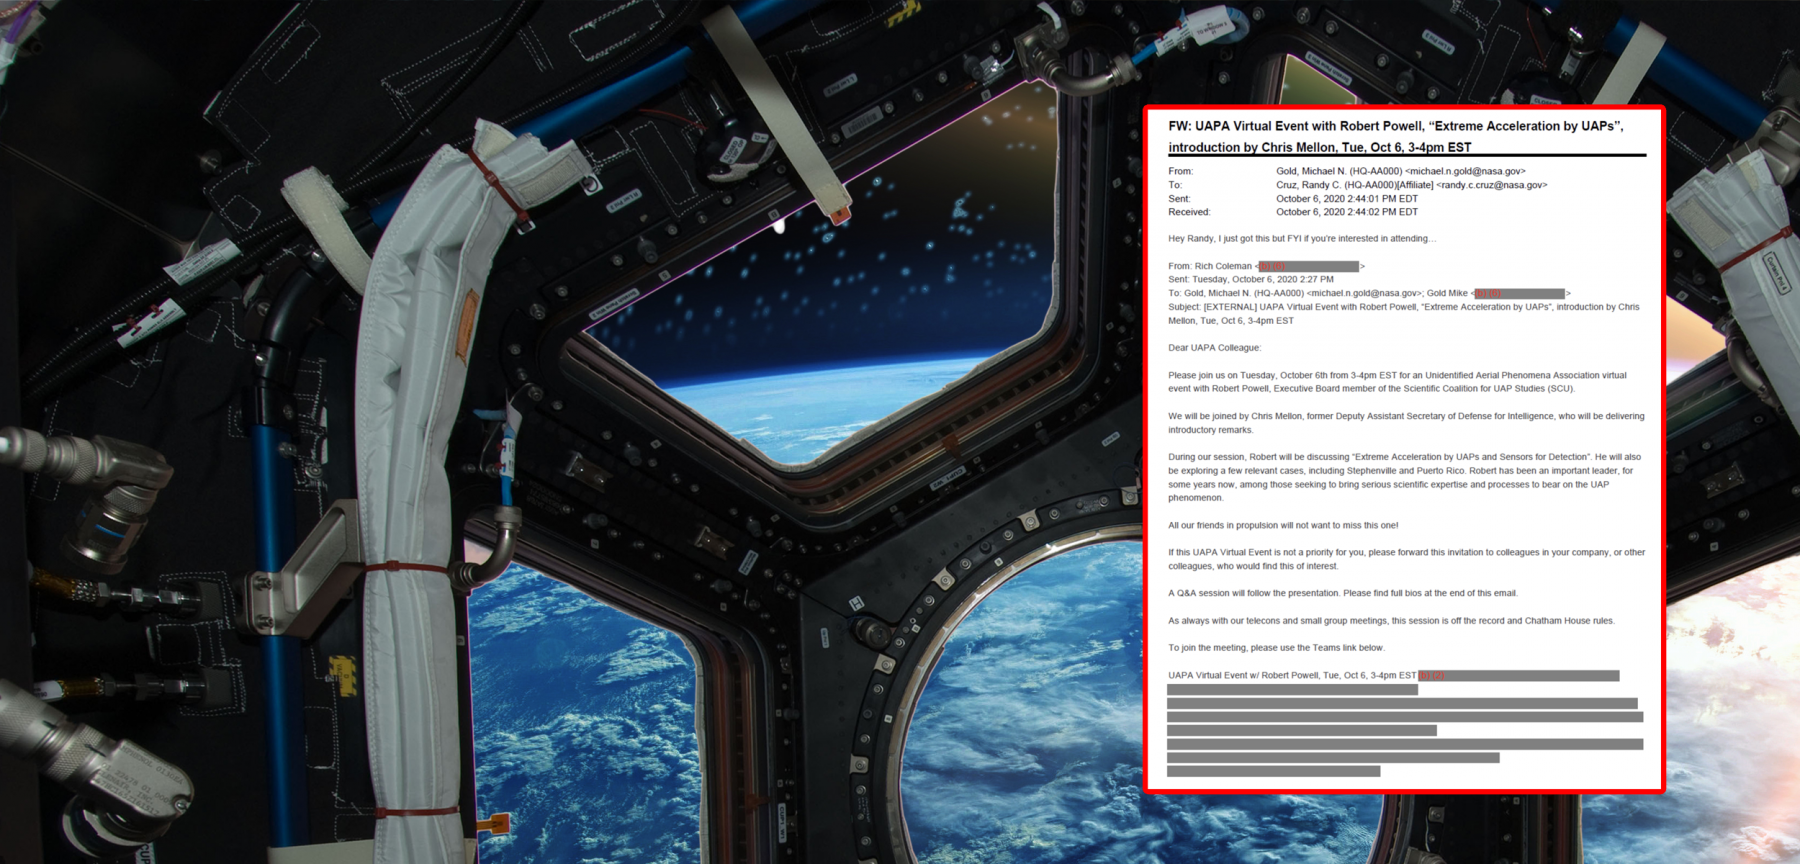 Запрос FOIA раскрывает внутреннюю электронную почту НАСА о UAP и НЛО